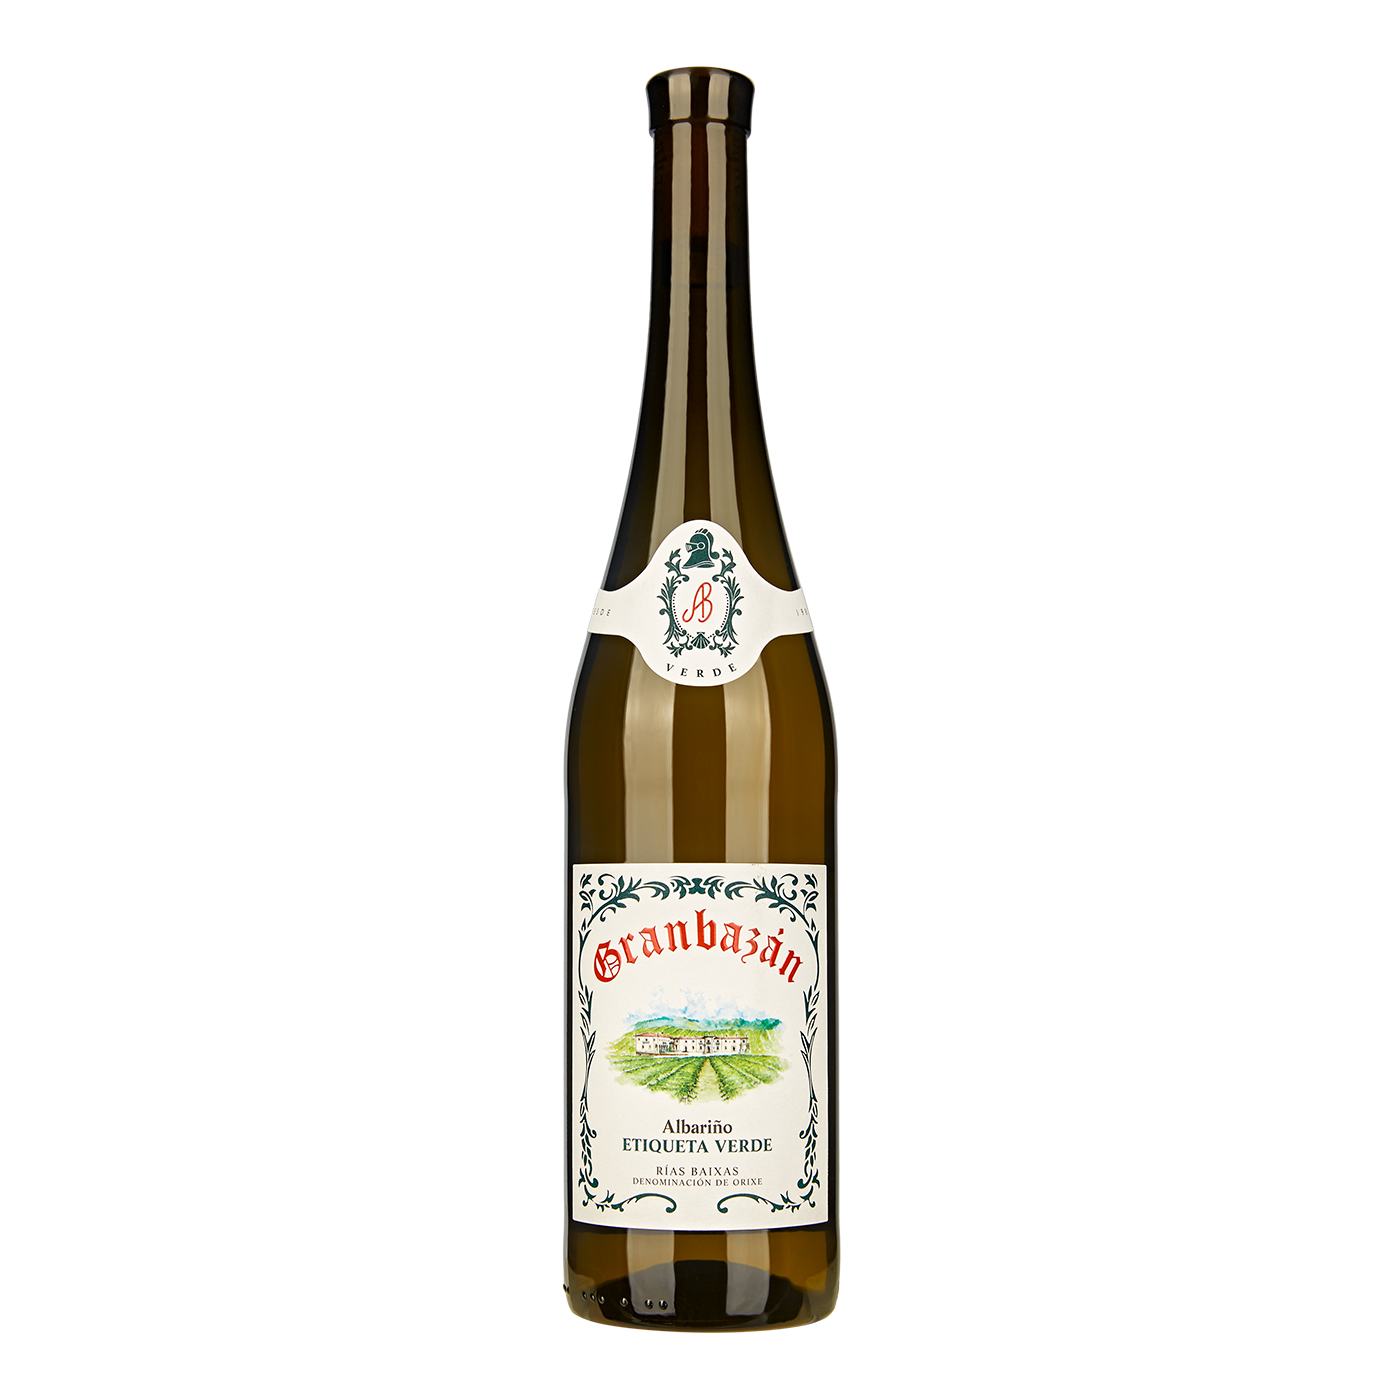 Granbázan - Etiqueta Verde Albariño - [winest]